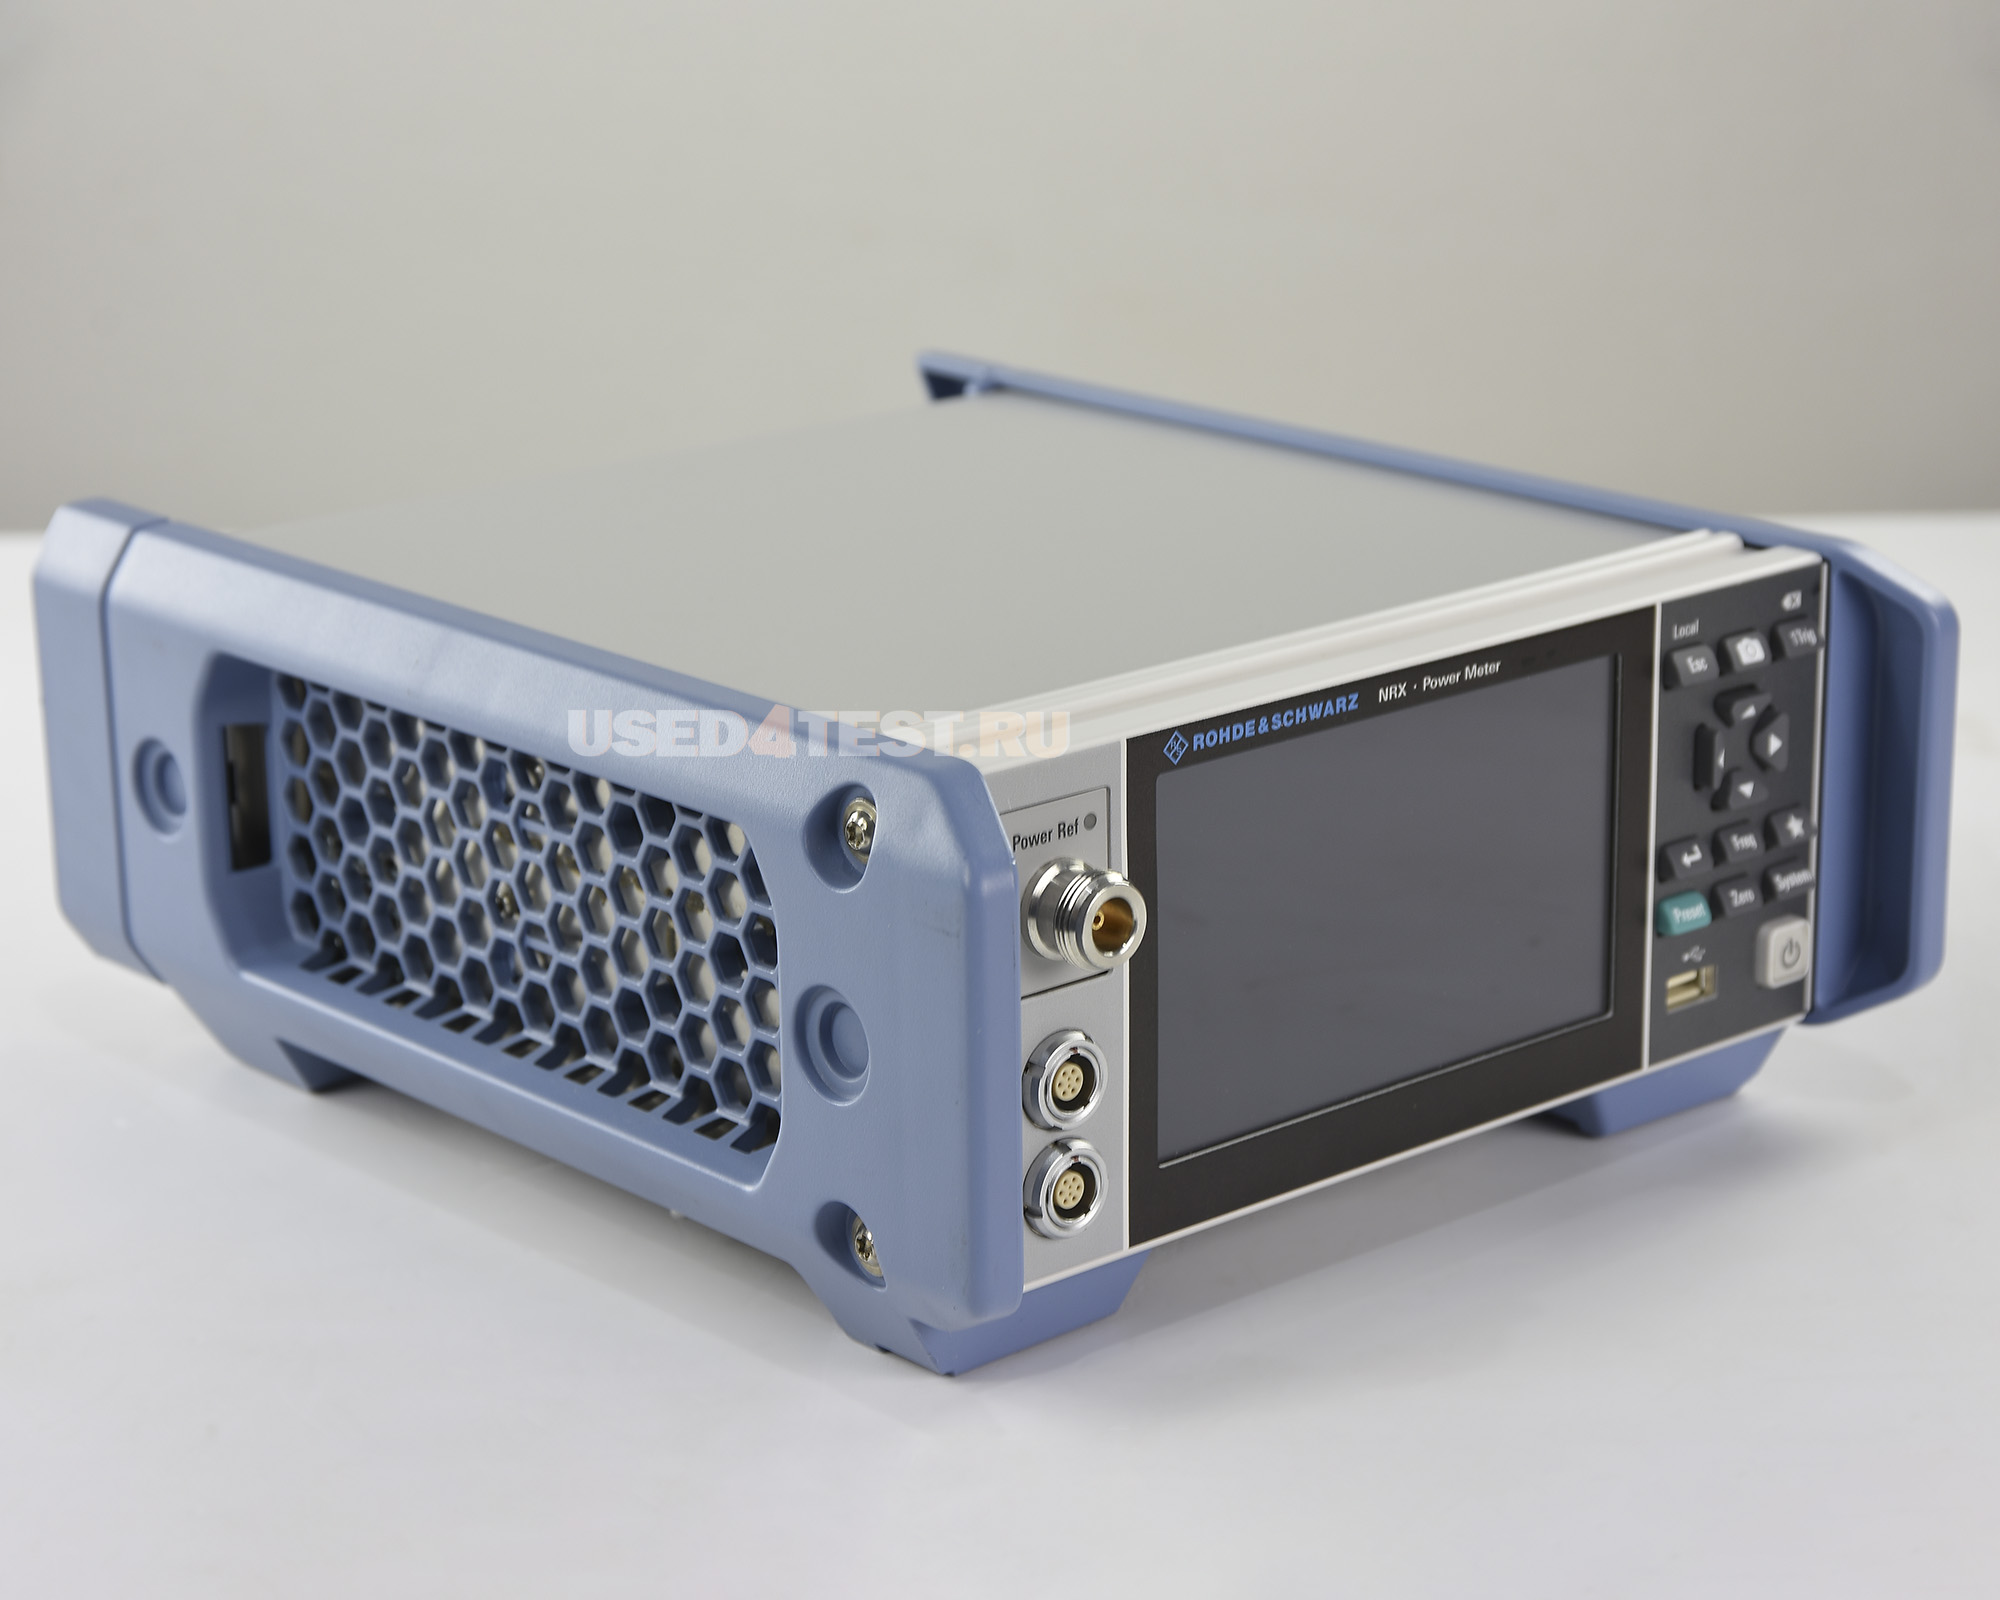 Измеритель мощности Rohde&Schwarz NRX с диапазоном до 1 ГГц


 В комплекте с опциями: 


	NRX-B1 — Источник для проверки датчиков мощности (не совместим с NRX-B9)
	NRX-B4 — 3-й (С) и 4-й (D) входы для датчиков R&S®NRP (на задней панели прибора)
NRX-B8 — Интерфейс GPIB/IEEE488


 Стоимость указана в Рублях DDP Москва по безналичному расчету включая НДС 20%
